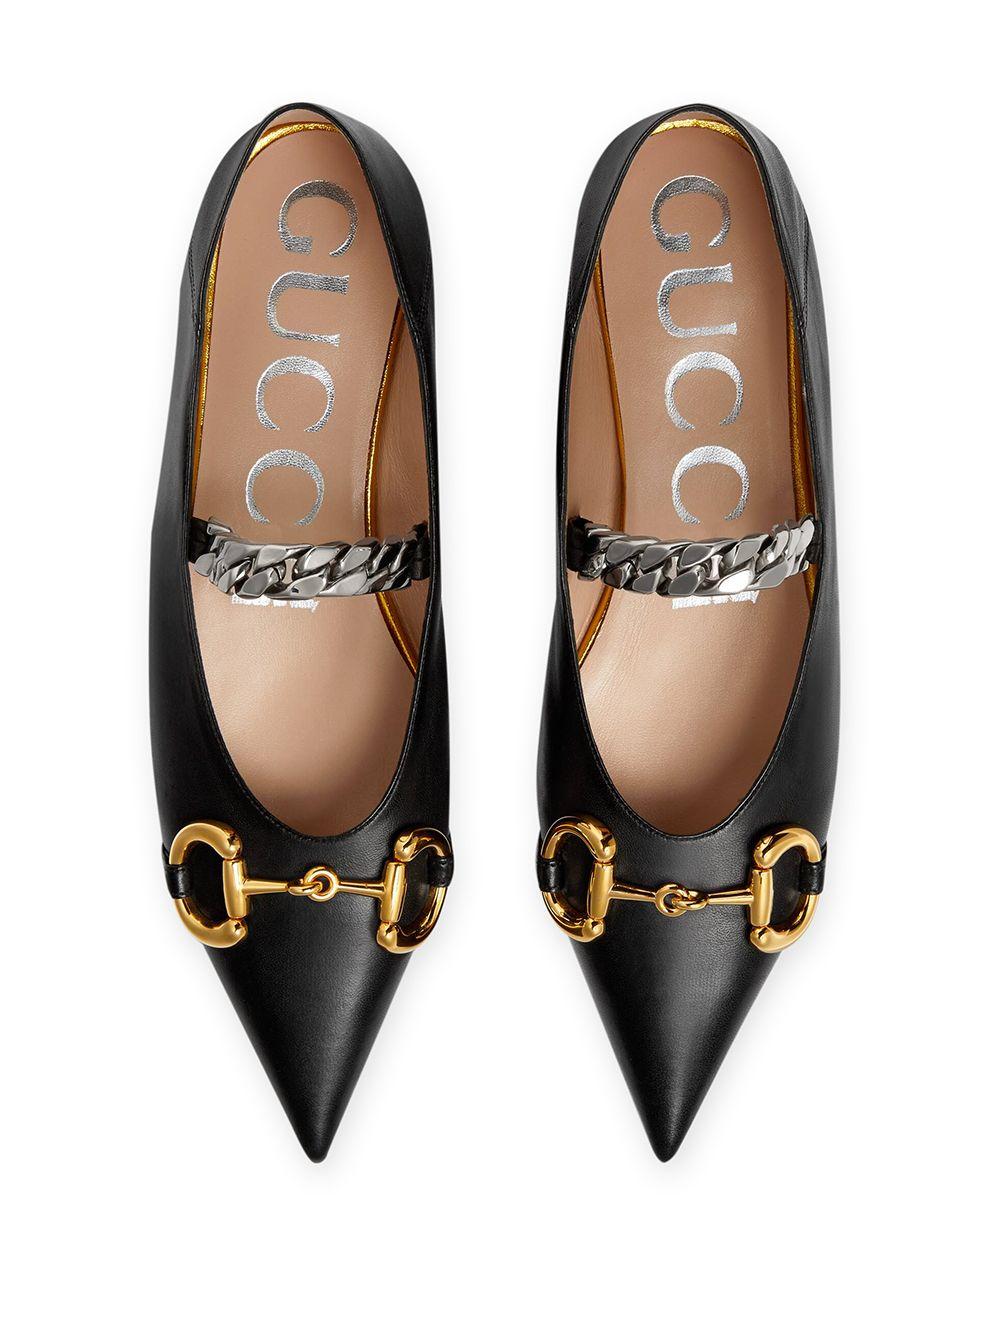 Gucci Leather Deva Chain-strap Ballerina Flats in Black - Save 27% - Lyst